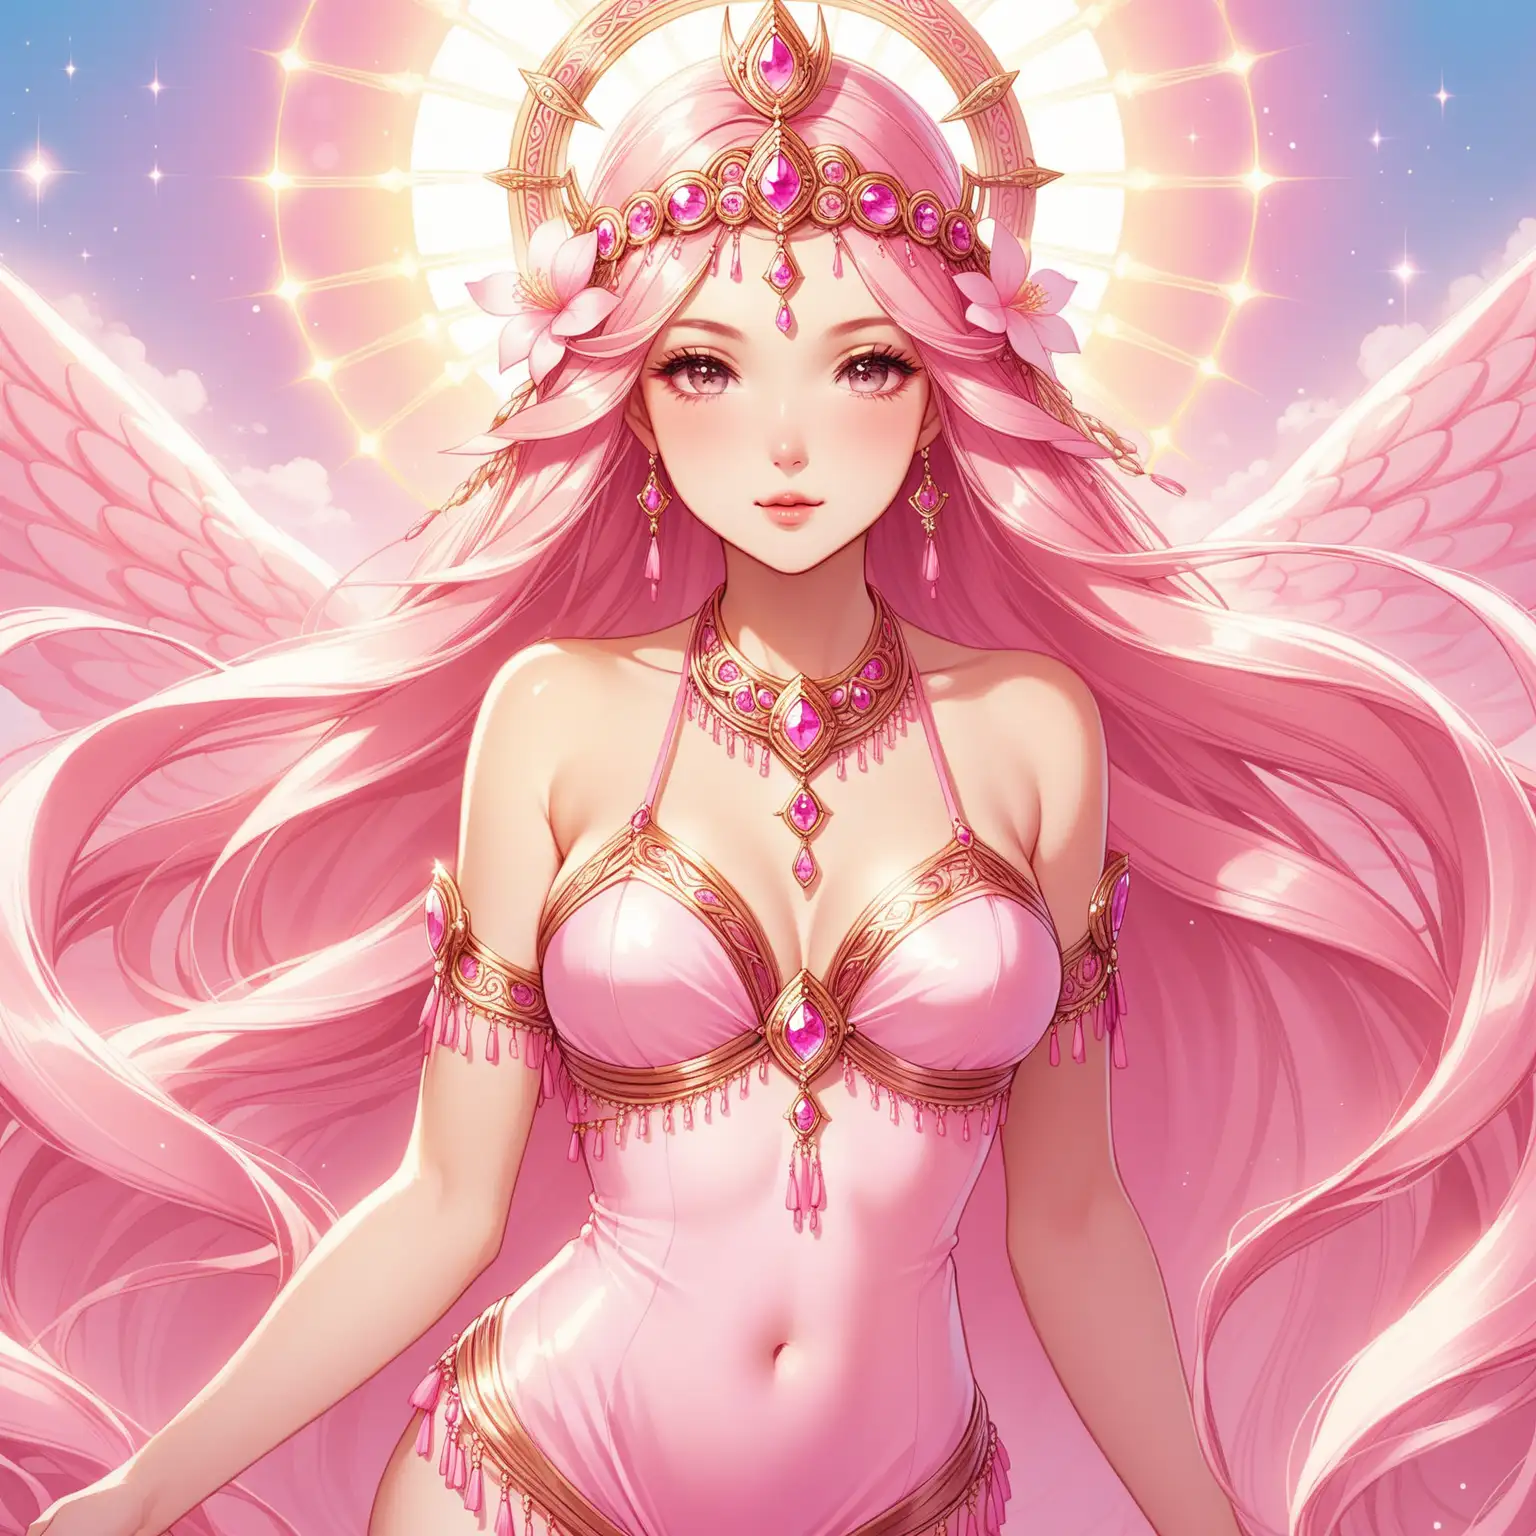 Ethereal Feminine Goddess Adorned in Pink